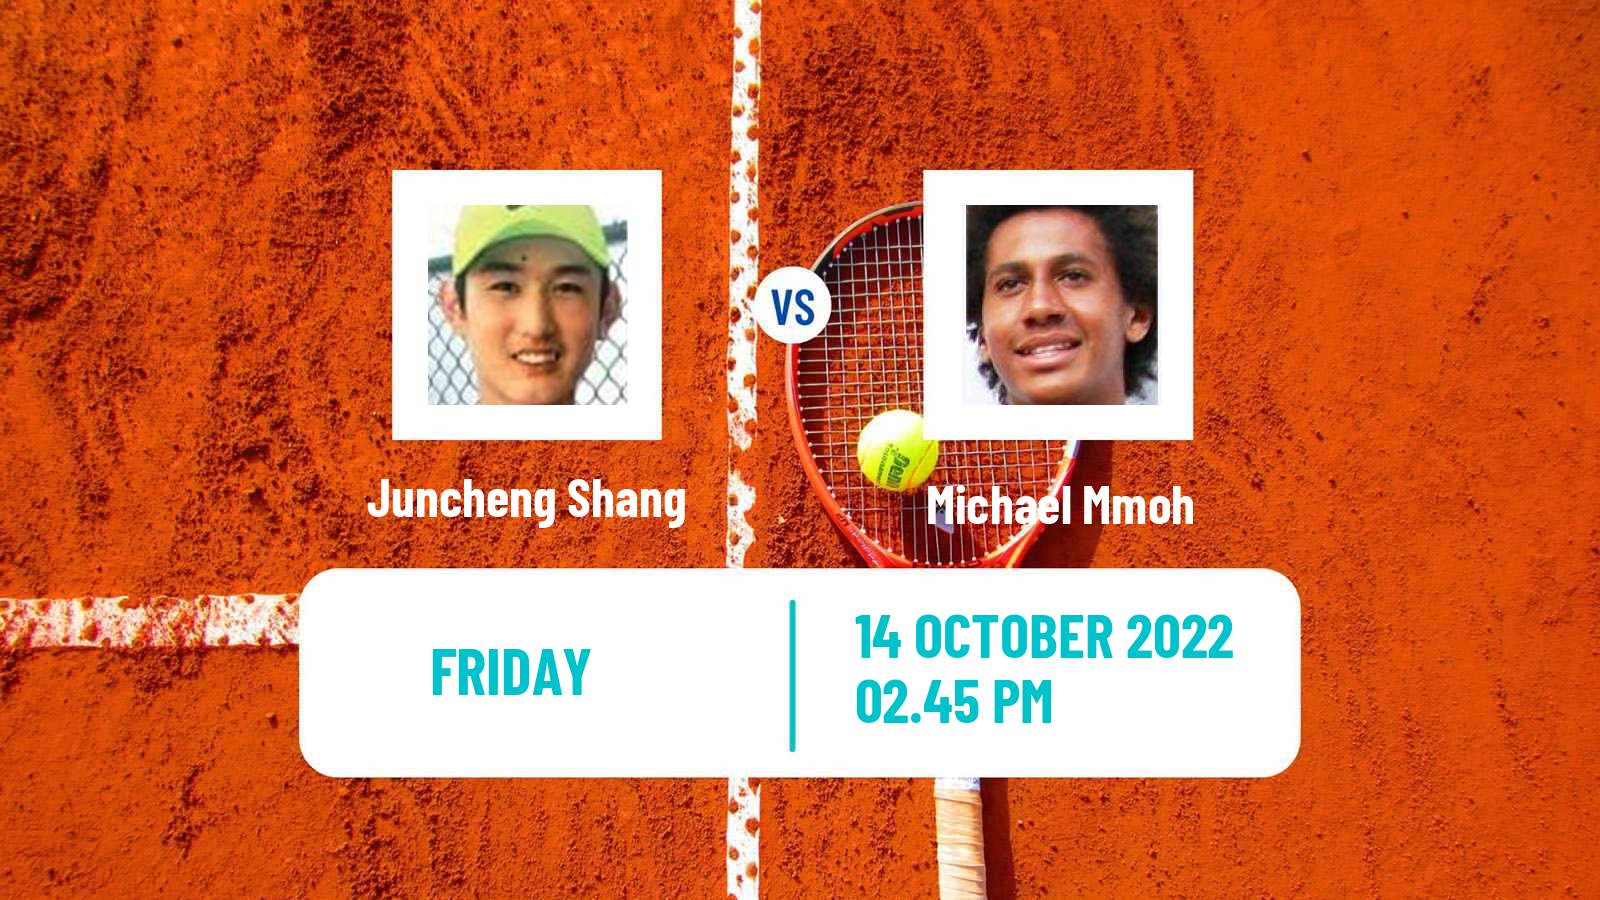 Tennis ATP Challenger Juncheng Shang - Michael Mmoh